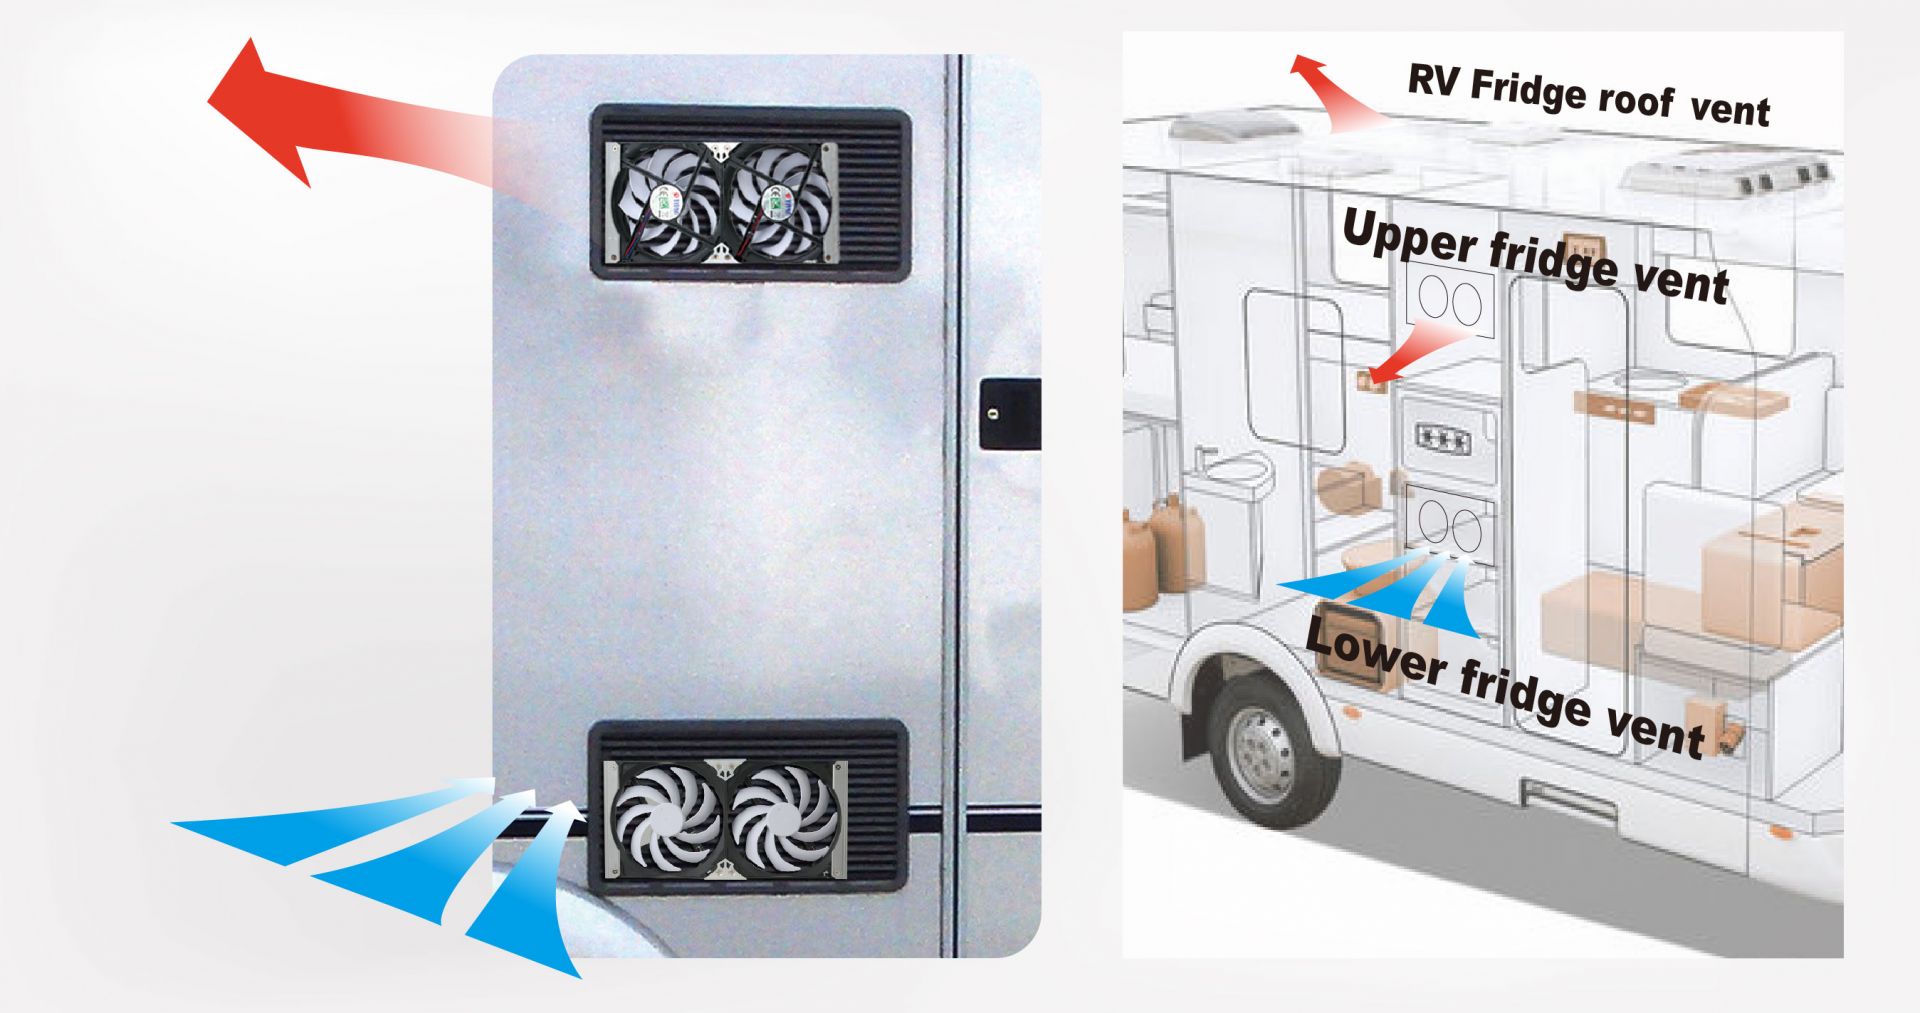 적절한 환기 장소는 RV 냉장고의 순환을 촉진하는 열쇠입니다.